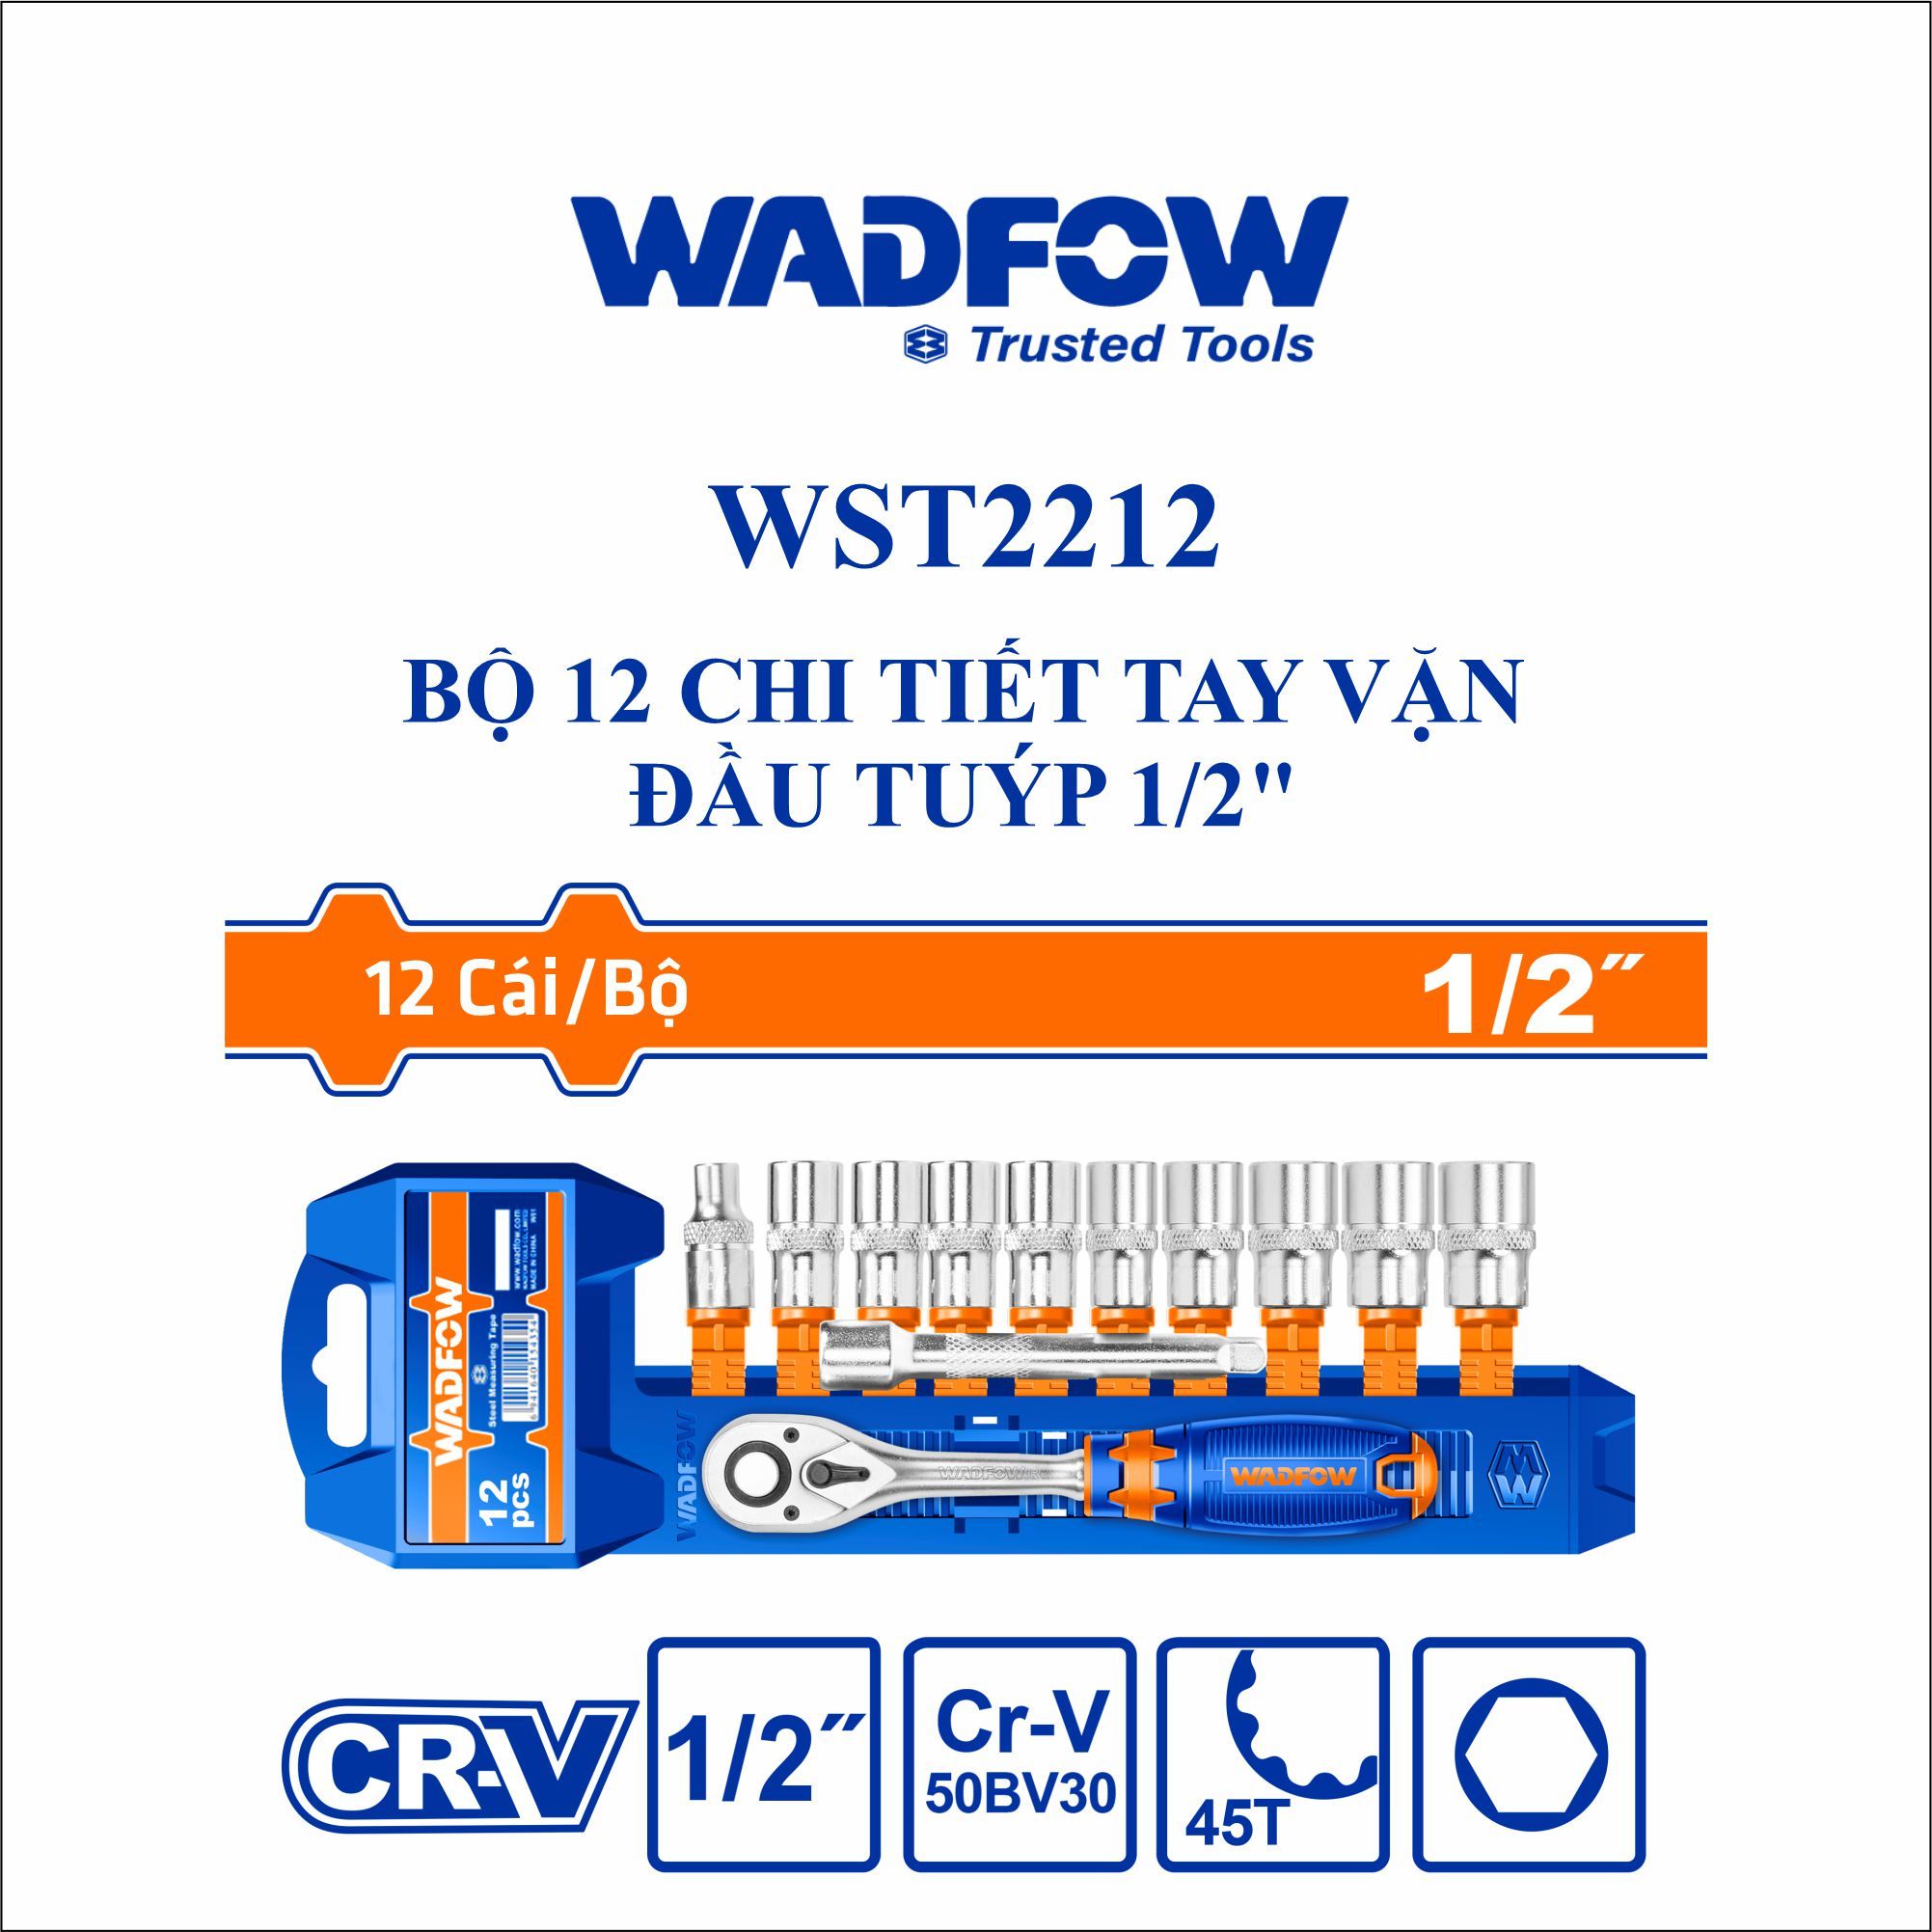  Bộ 12 chi tiết tay vặn đầu tuýp 1/2 Inch WADFOW WST2212 